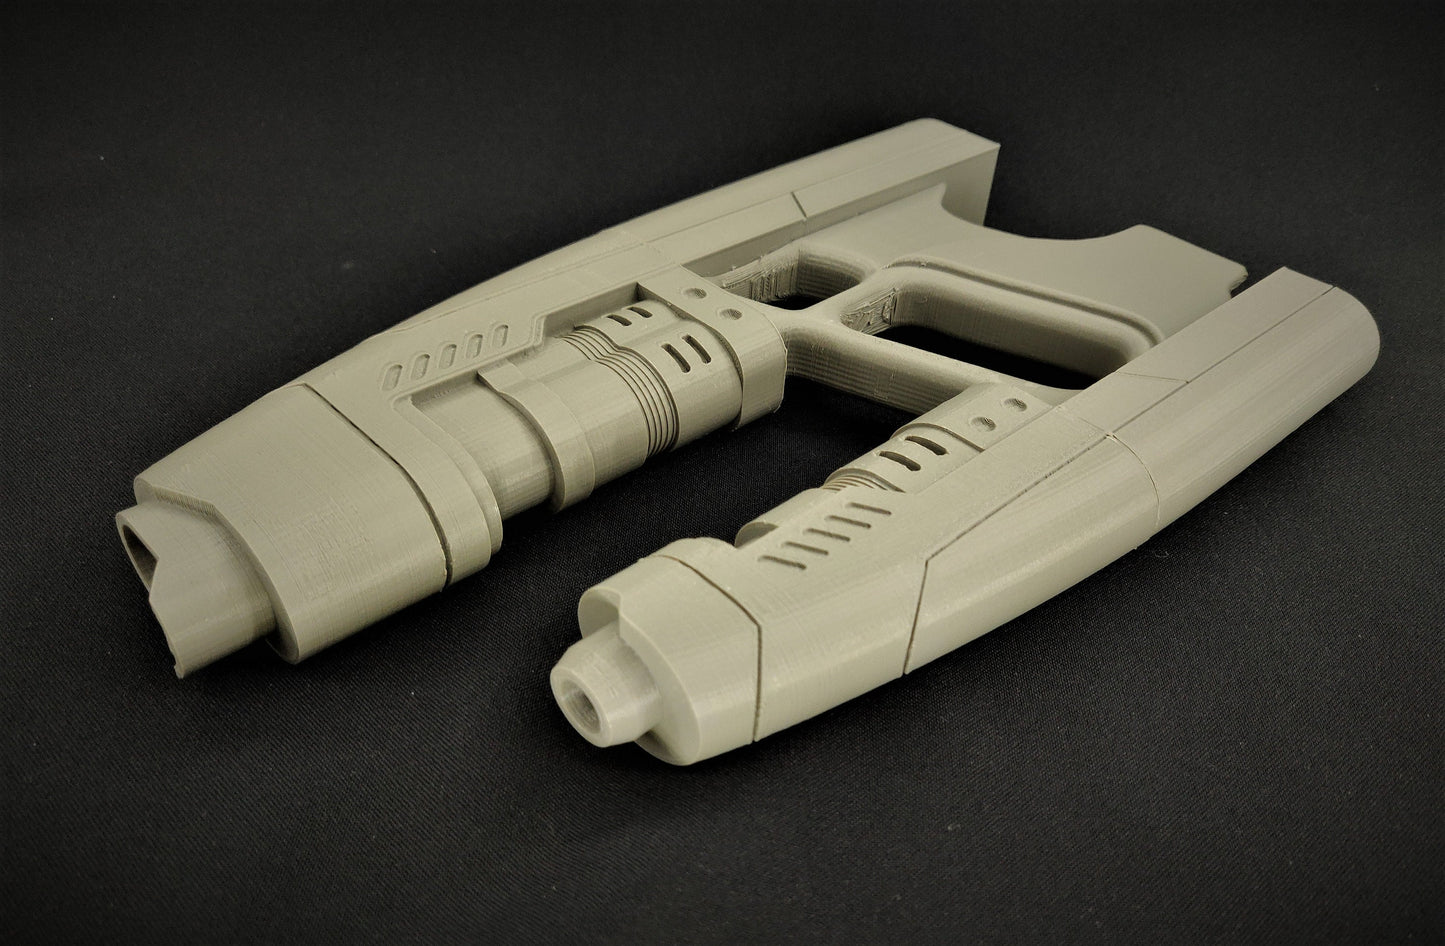 ELEMENT - Sci-fi Blaster - 3D Printed Replica